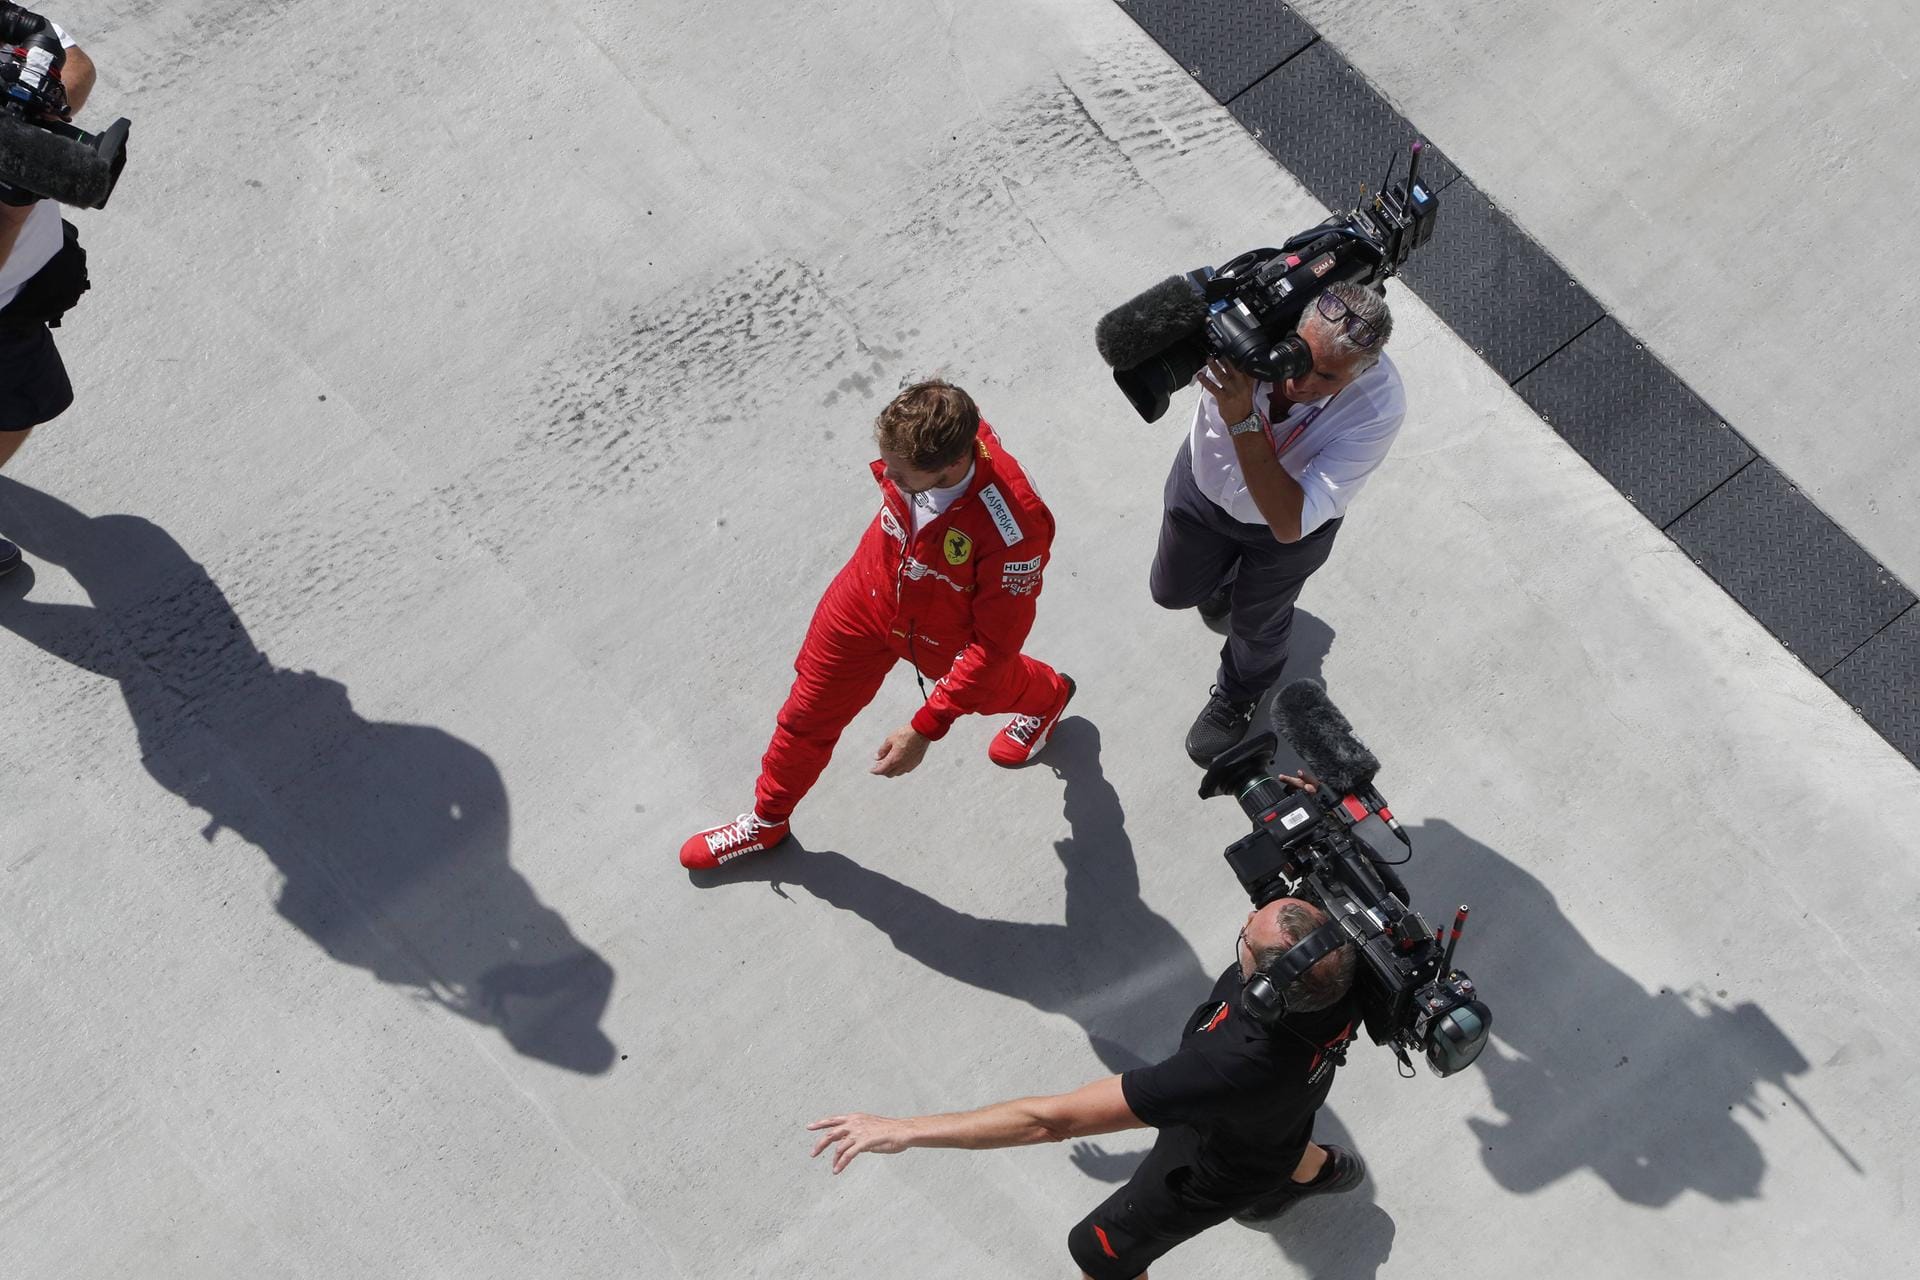 Telegraph: "Die Hölle hätte nicht wütender sein können als Sebastian Vettel. In einem der bemerkenswertesten Ausraster der Formel-1-Geschichte klagte der Ferrari-Fahrer die Stewards an, ihm den Sieg gestohlen zu haben. Allerdings hat Vettel mit Hamilton im Rückspiegel schon in der Vergangenheit einige dubiose Entscheidungen getroffen. Hamilton bekam den Sieg vor die Füße gelegt, aber freuen wollte er sich darüber nicht."